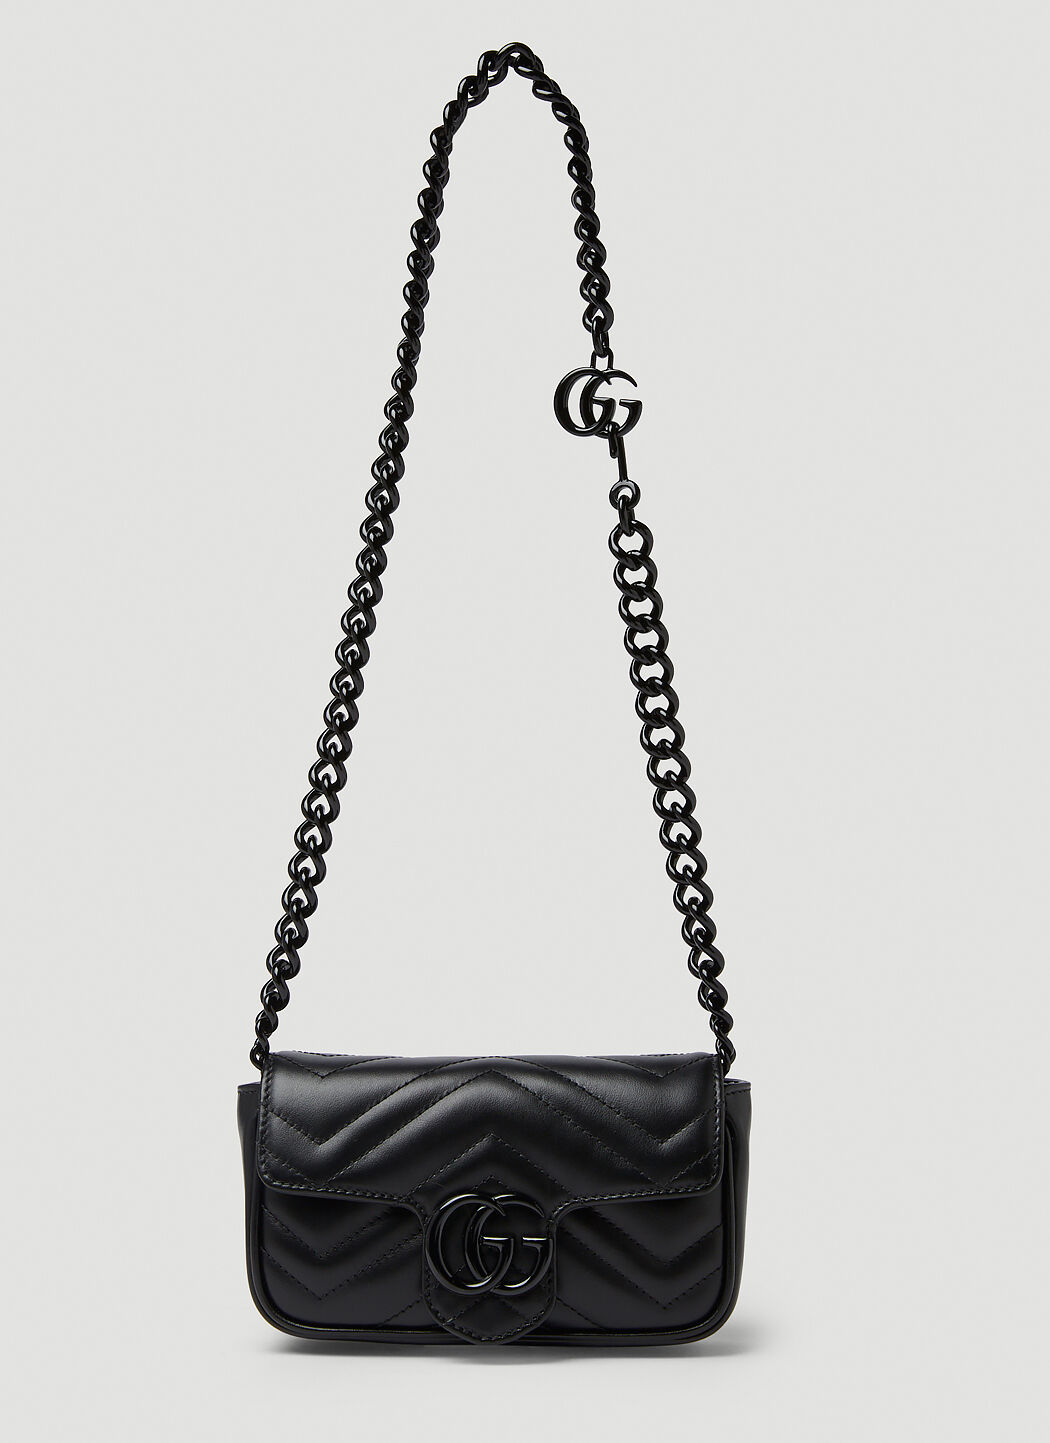 Vivienne Westwood GG Marmont 2.0 Belt Bag 黑色 vvw0256011